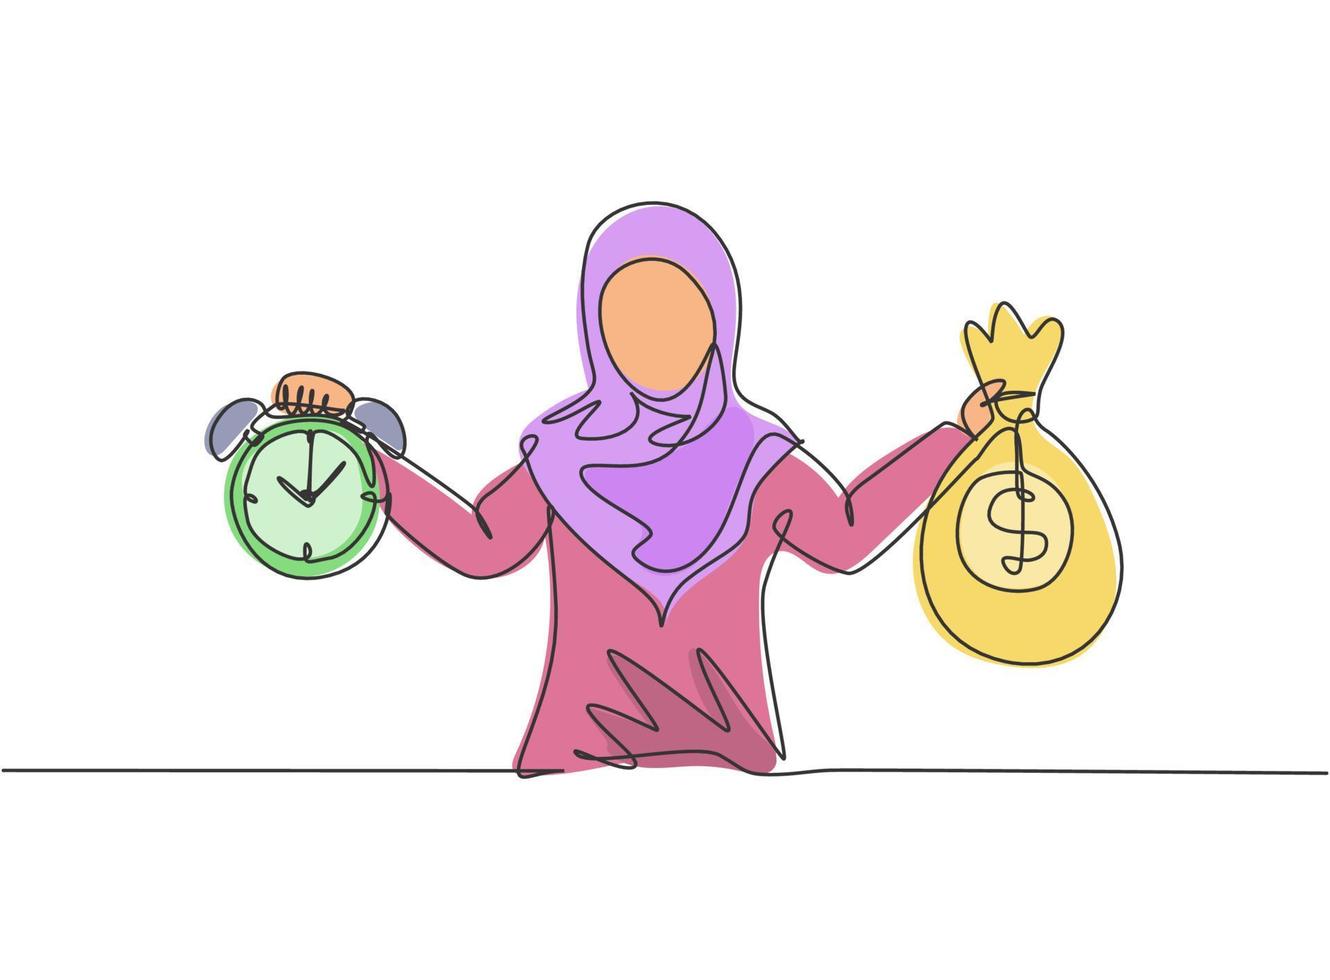 kontinuerlig en radritning ung arabisk kvinnlig arbetare som håller pengar väska och väckarklocka med händerna. minimalism metafor affärsidé. enkel linje rita design vektor grafisk illustration.